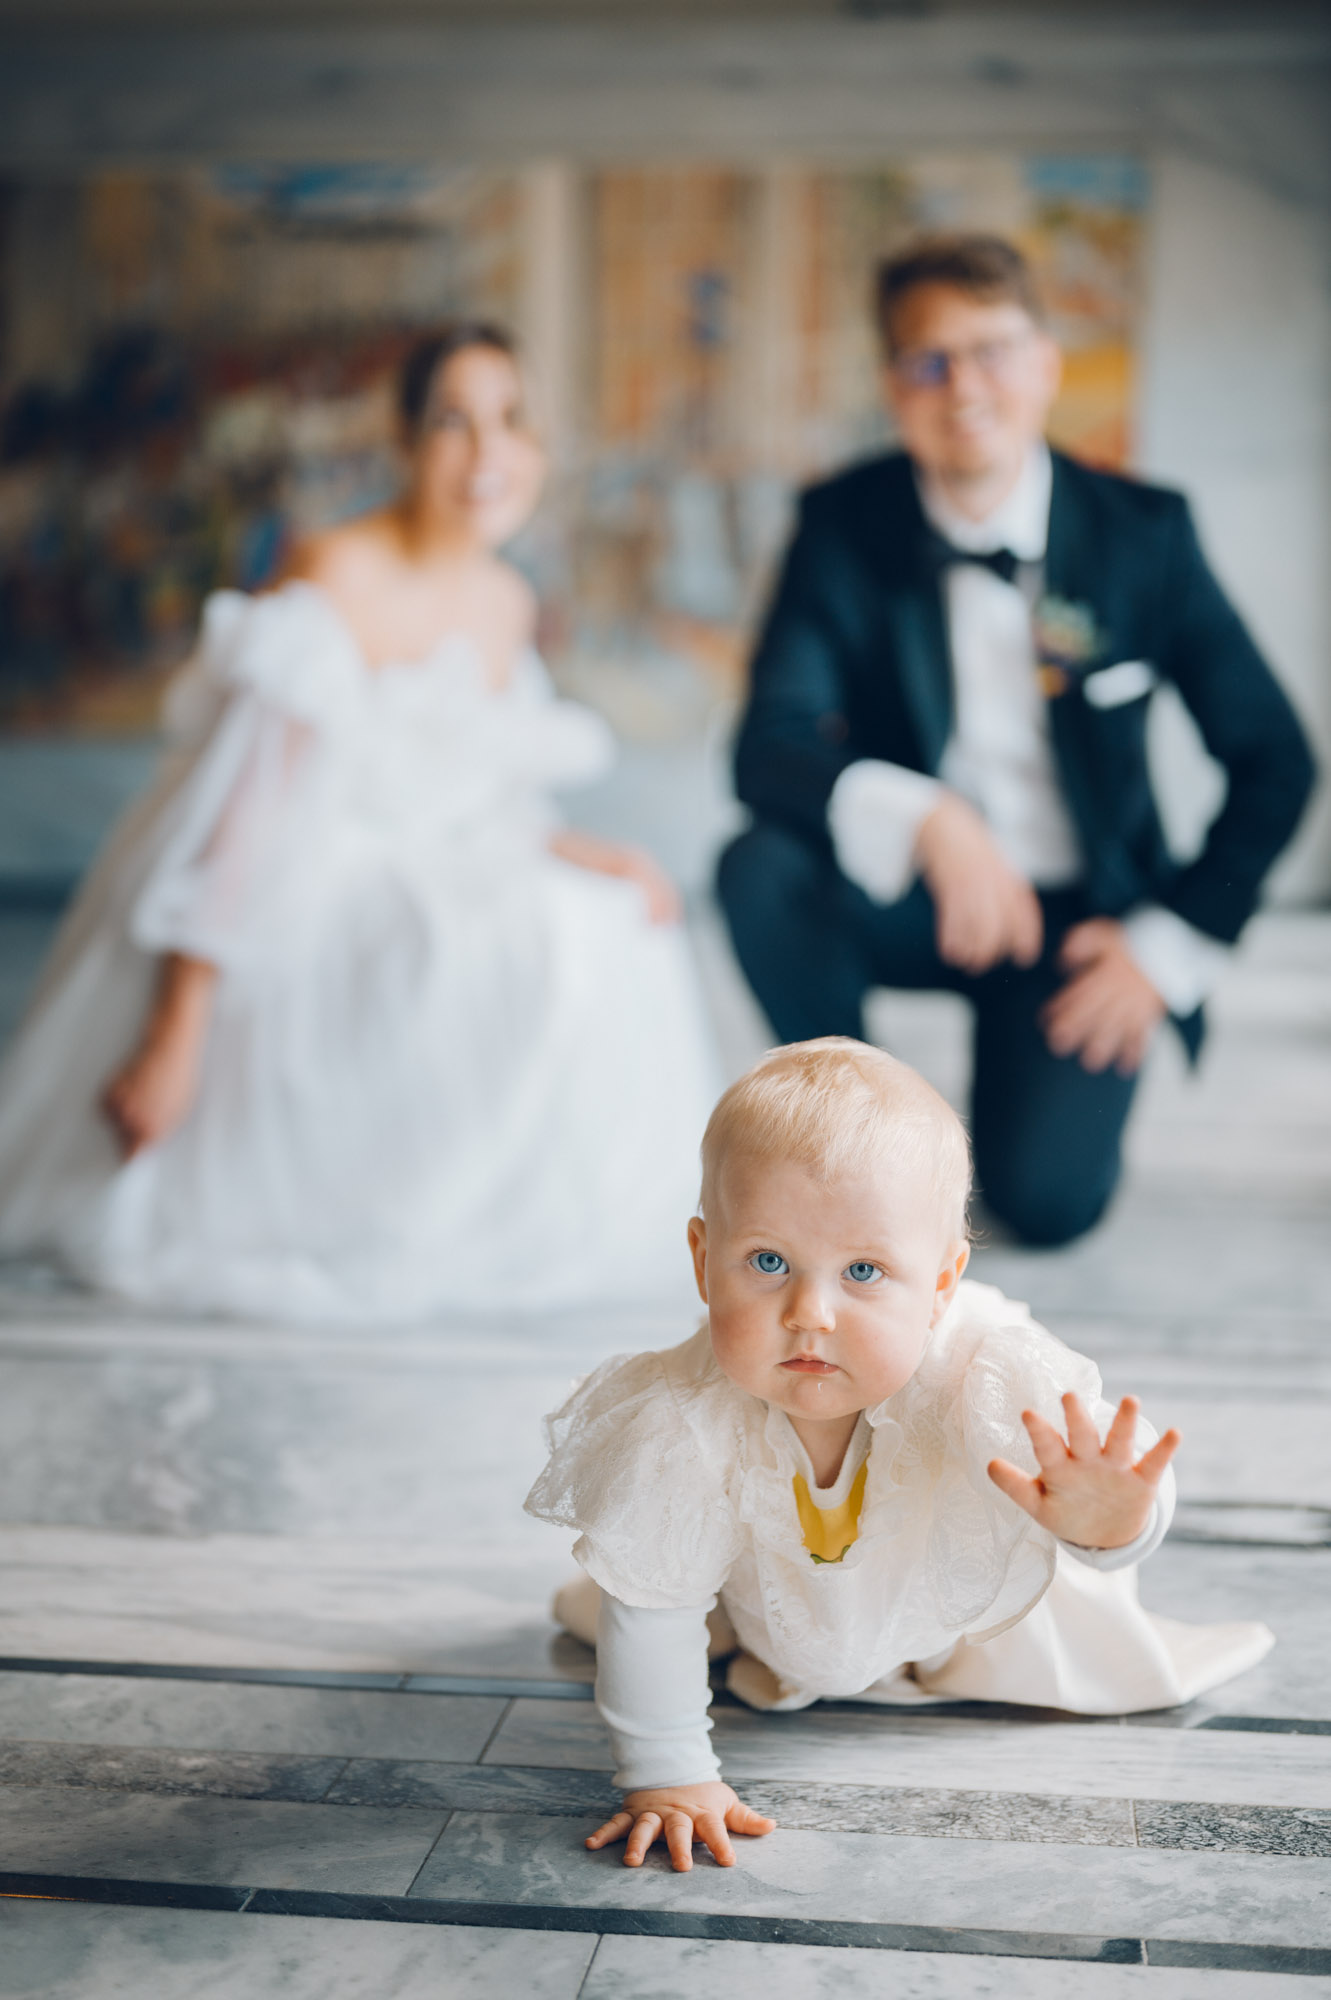 Et nydelig portrett av et brudepar med barnet sitt på Rådhuset. Barnet krabber mot kameraet, vi ser paret ute av fokus i bakgrunnen.